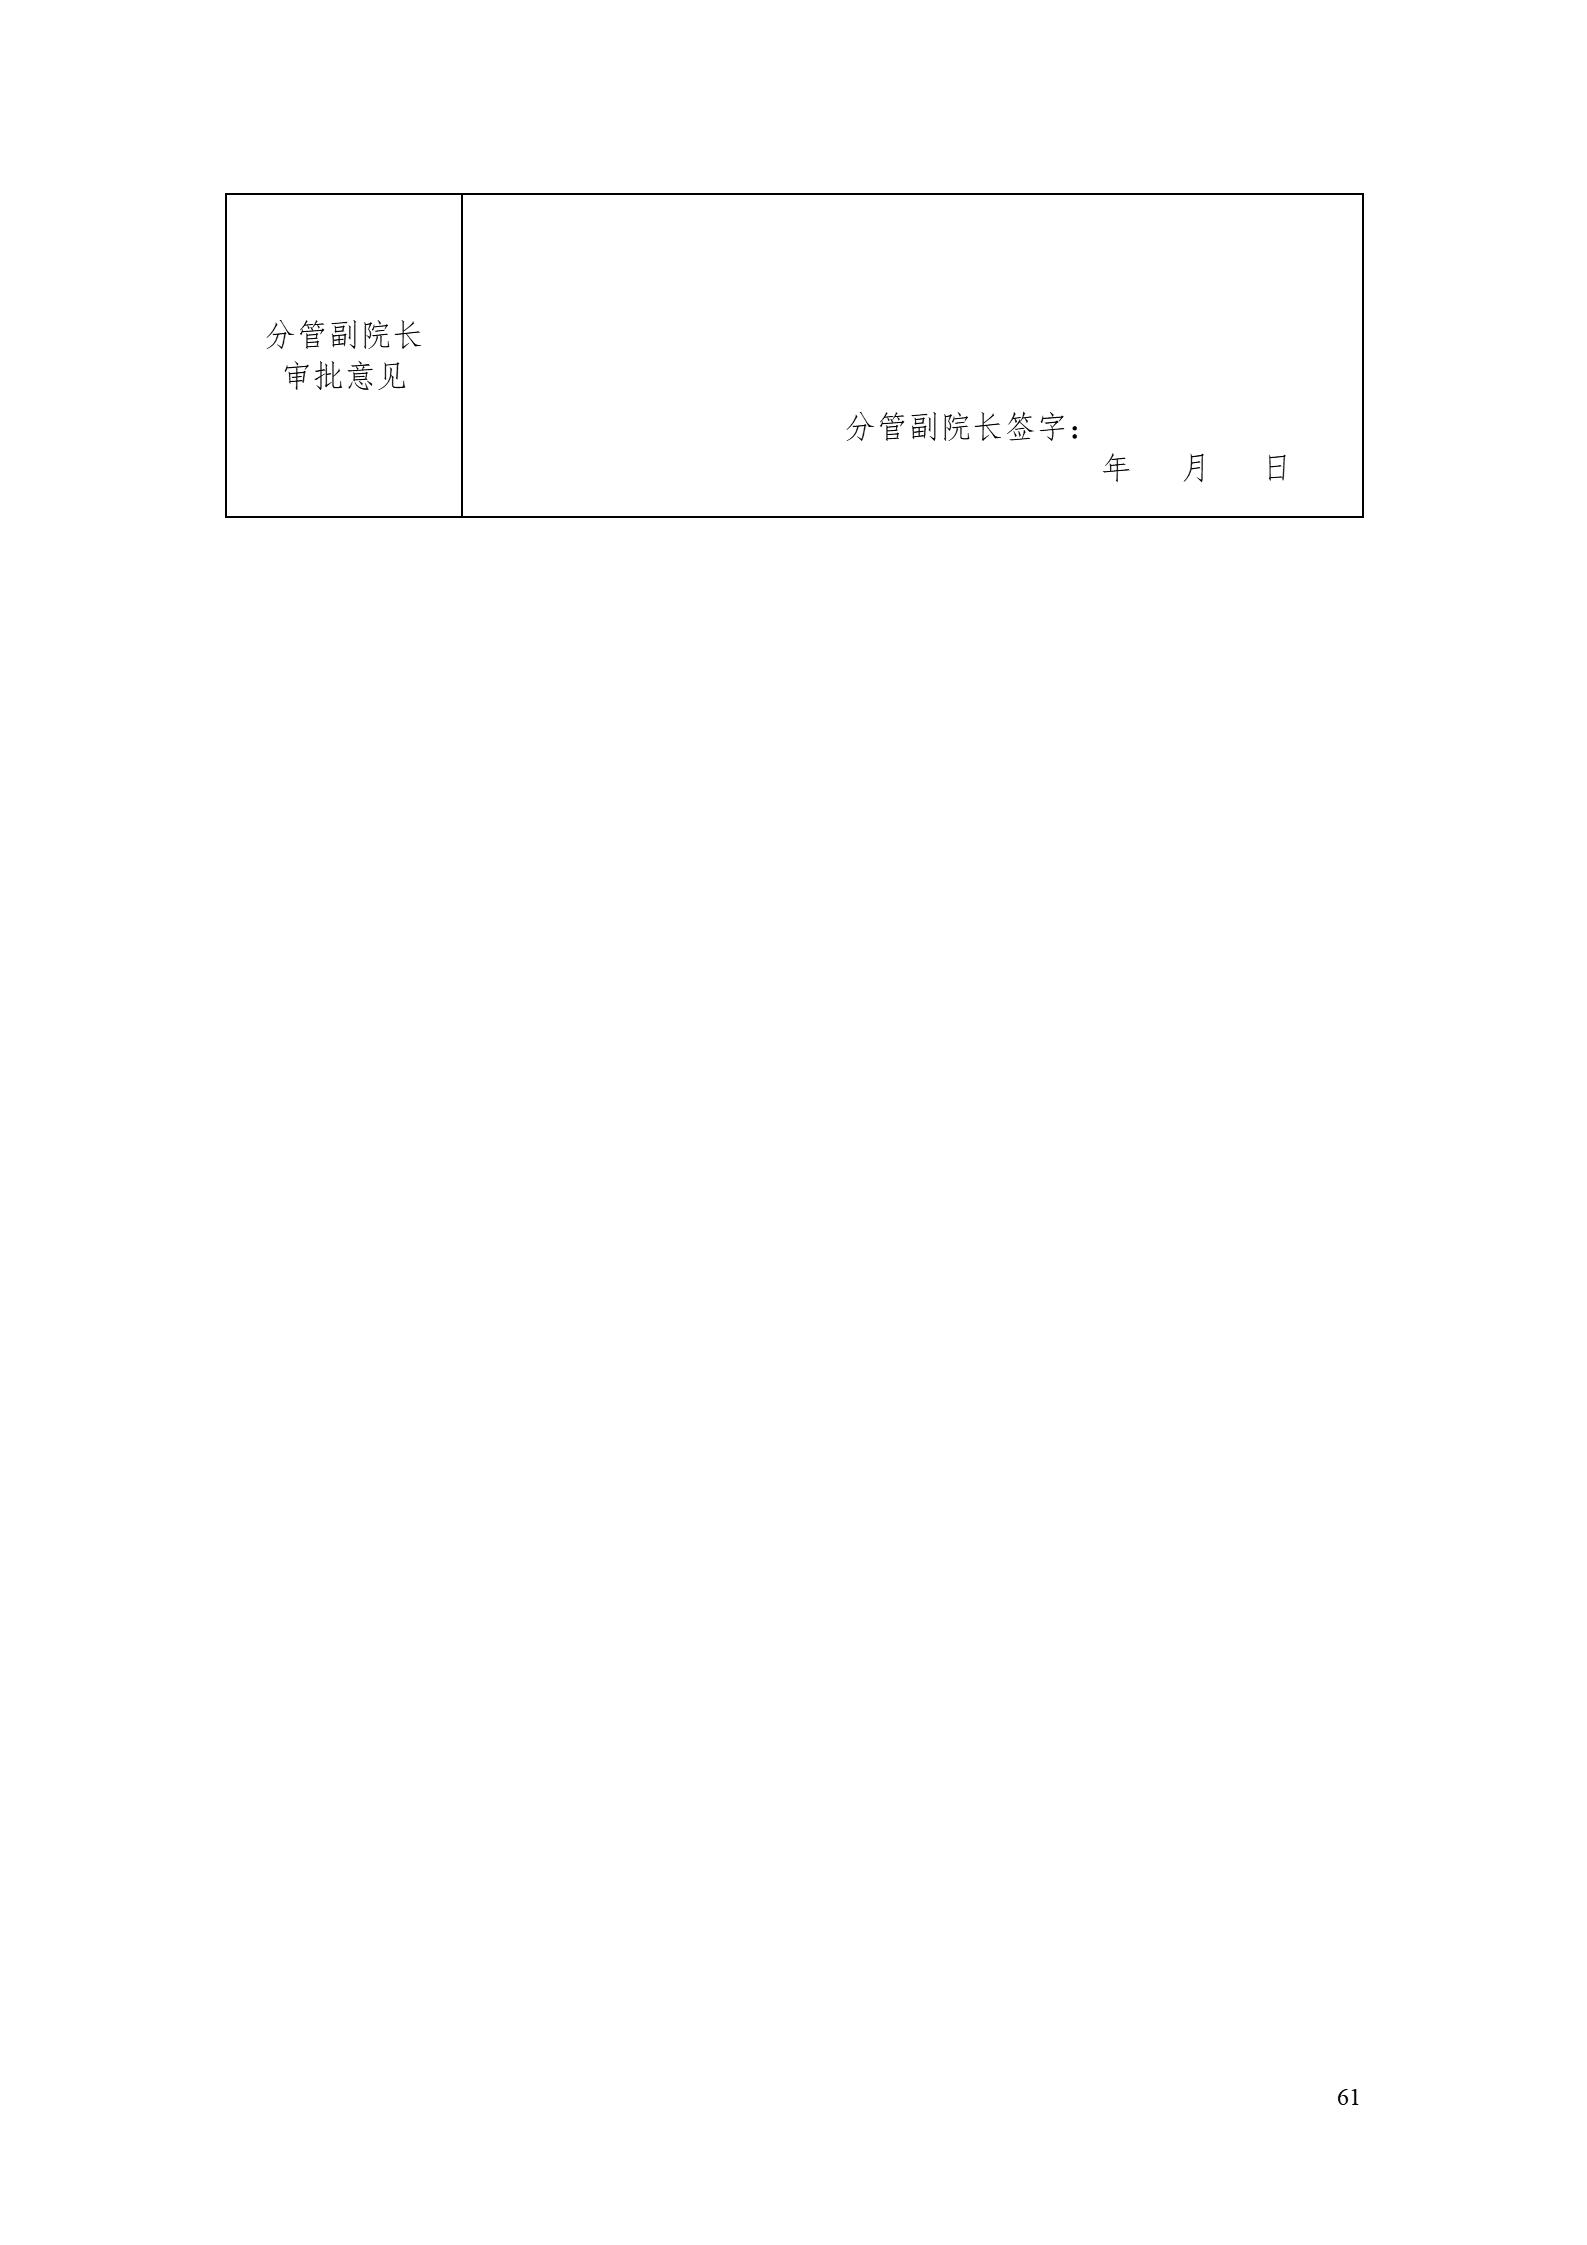 湖南机电职业技术学院2022版工业工程技术专业人才培养方案（修改版20220903）（5）_63.jpg